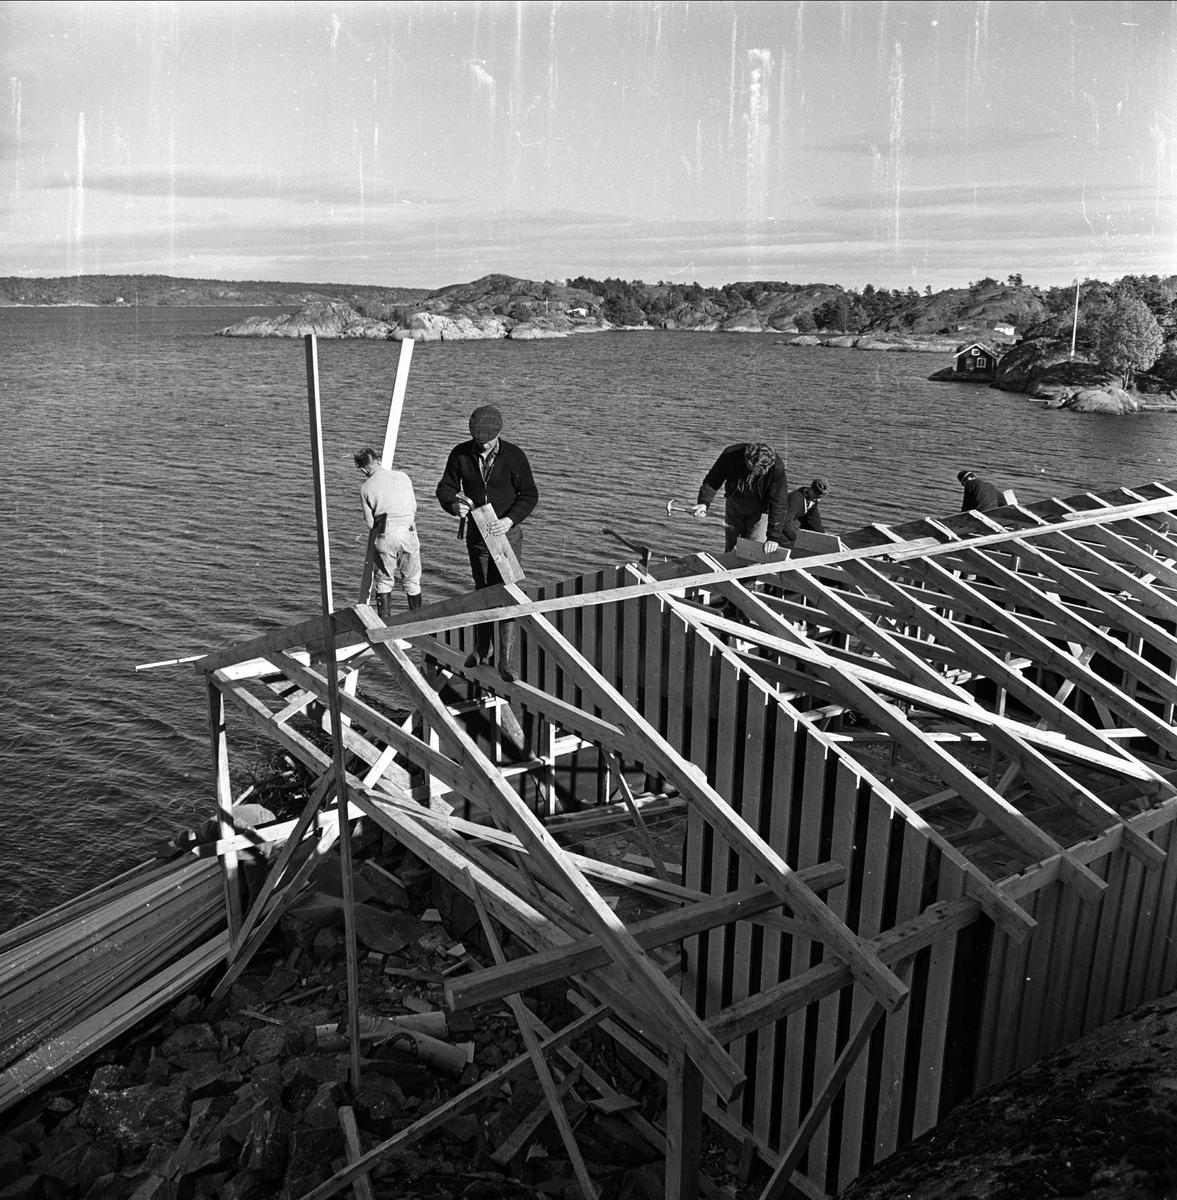 Fylkesmannen i Telemark bygger sommerhus ved Kragerø,  Telemark, oktober 1963. Arbeidere bygger hus. 